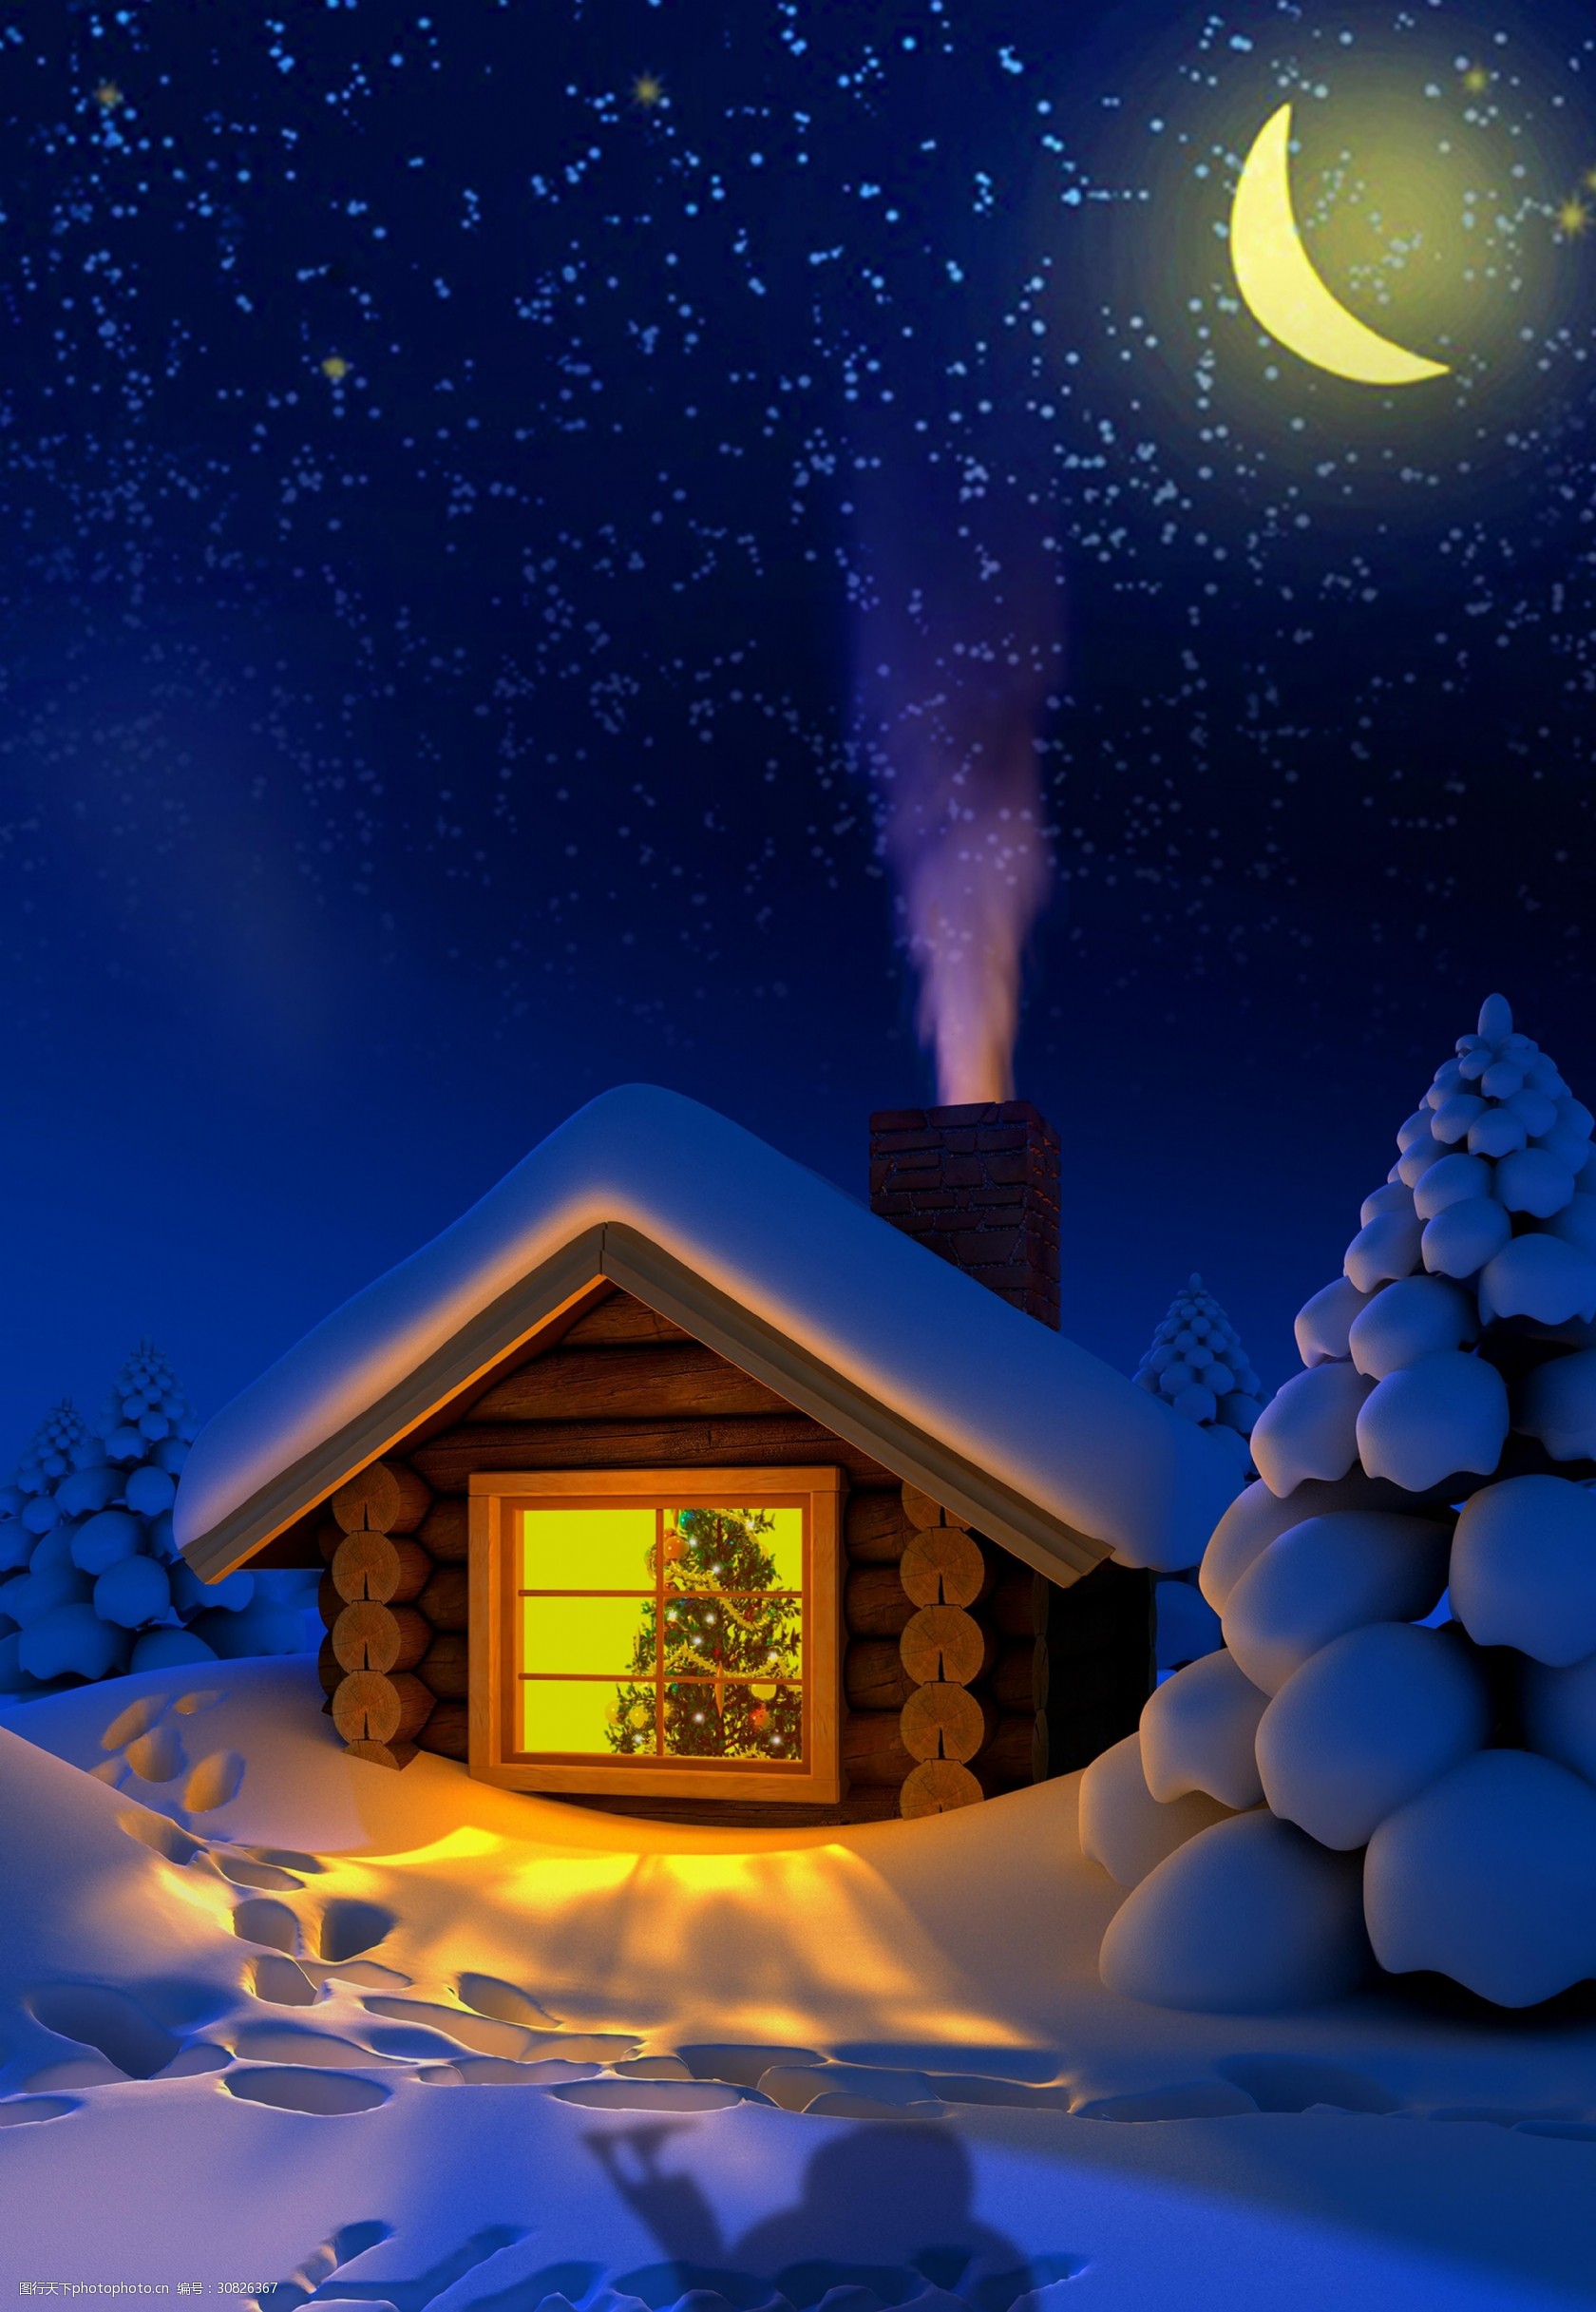 关键词:唯美浪漫平安夜海报背景 冬天 圣诞节 唯美 浪漫 房子 平安夜